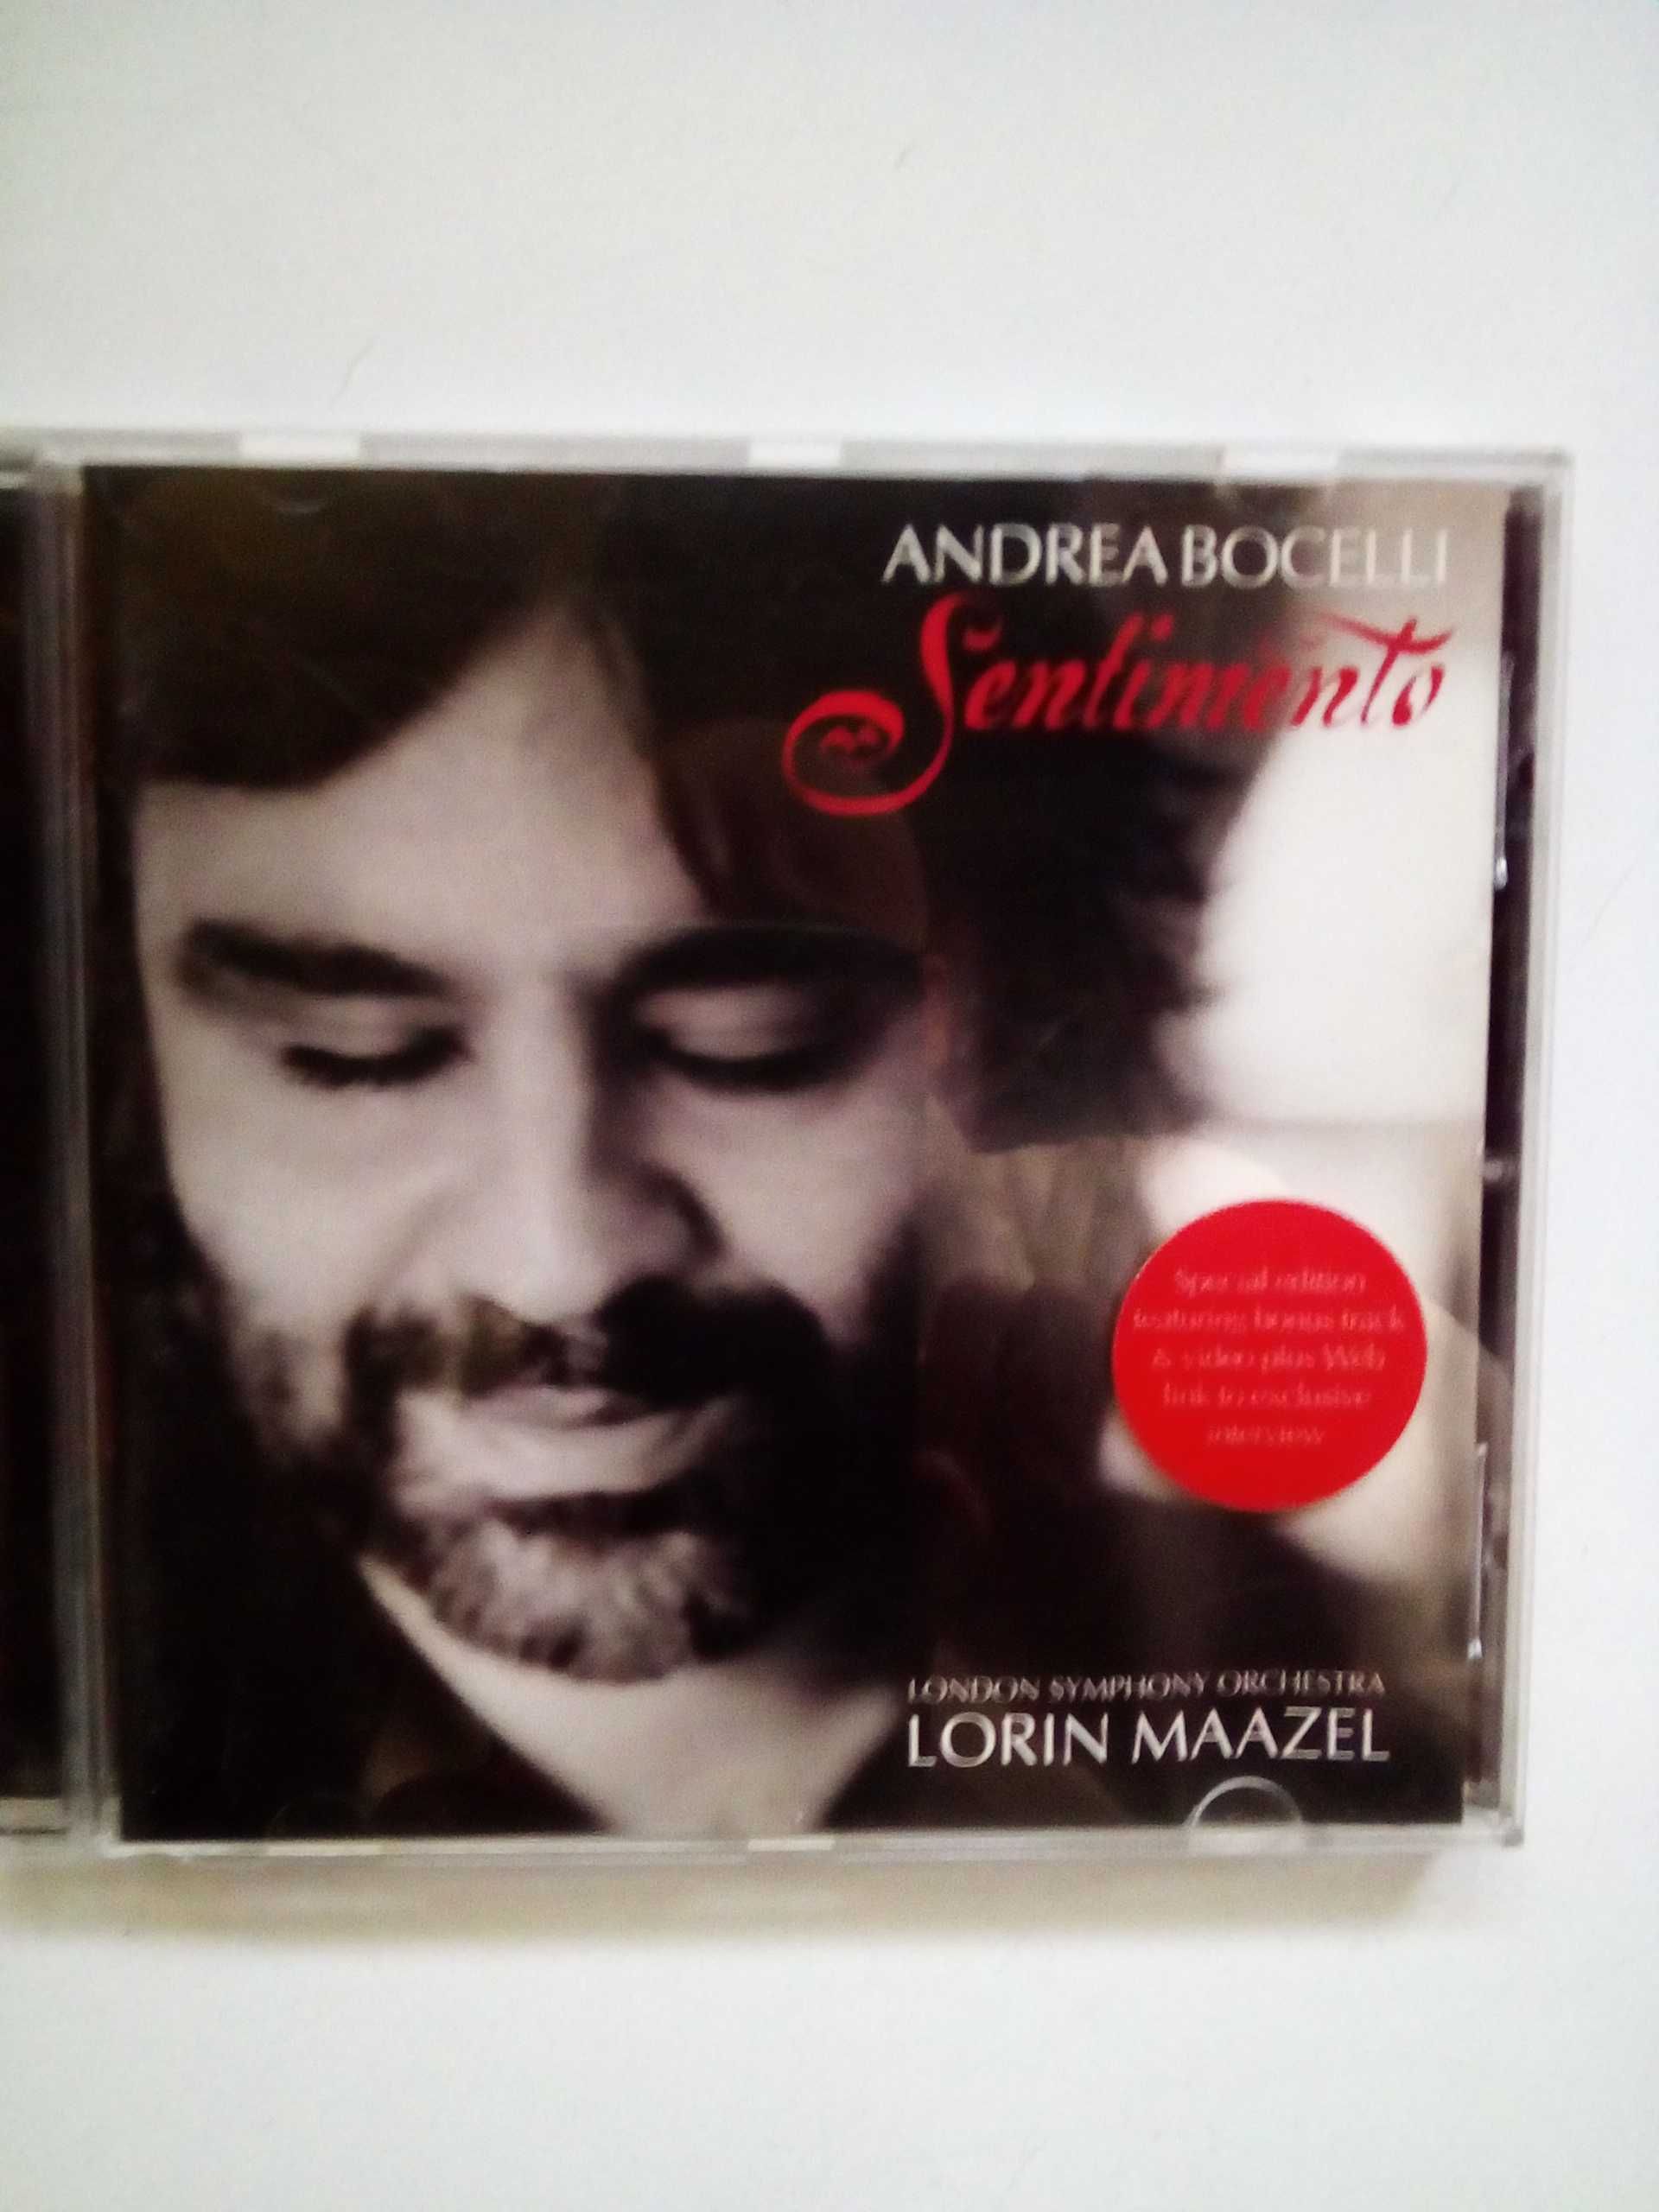 Andrea Bocelli, CD Sentimento